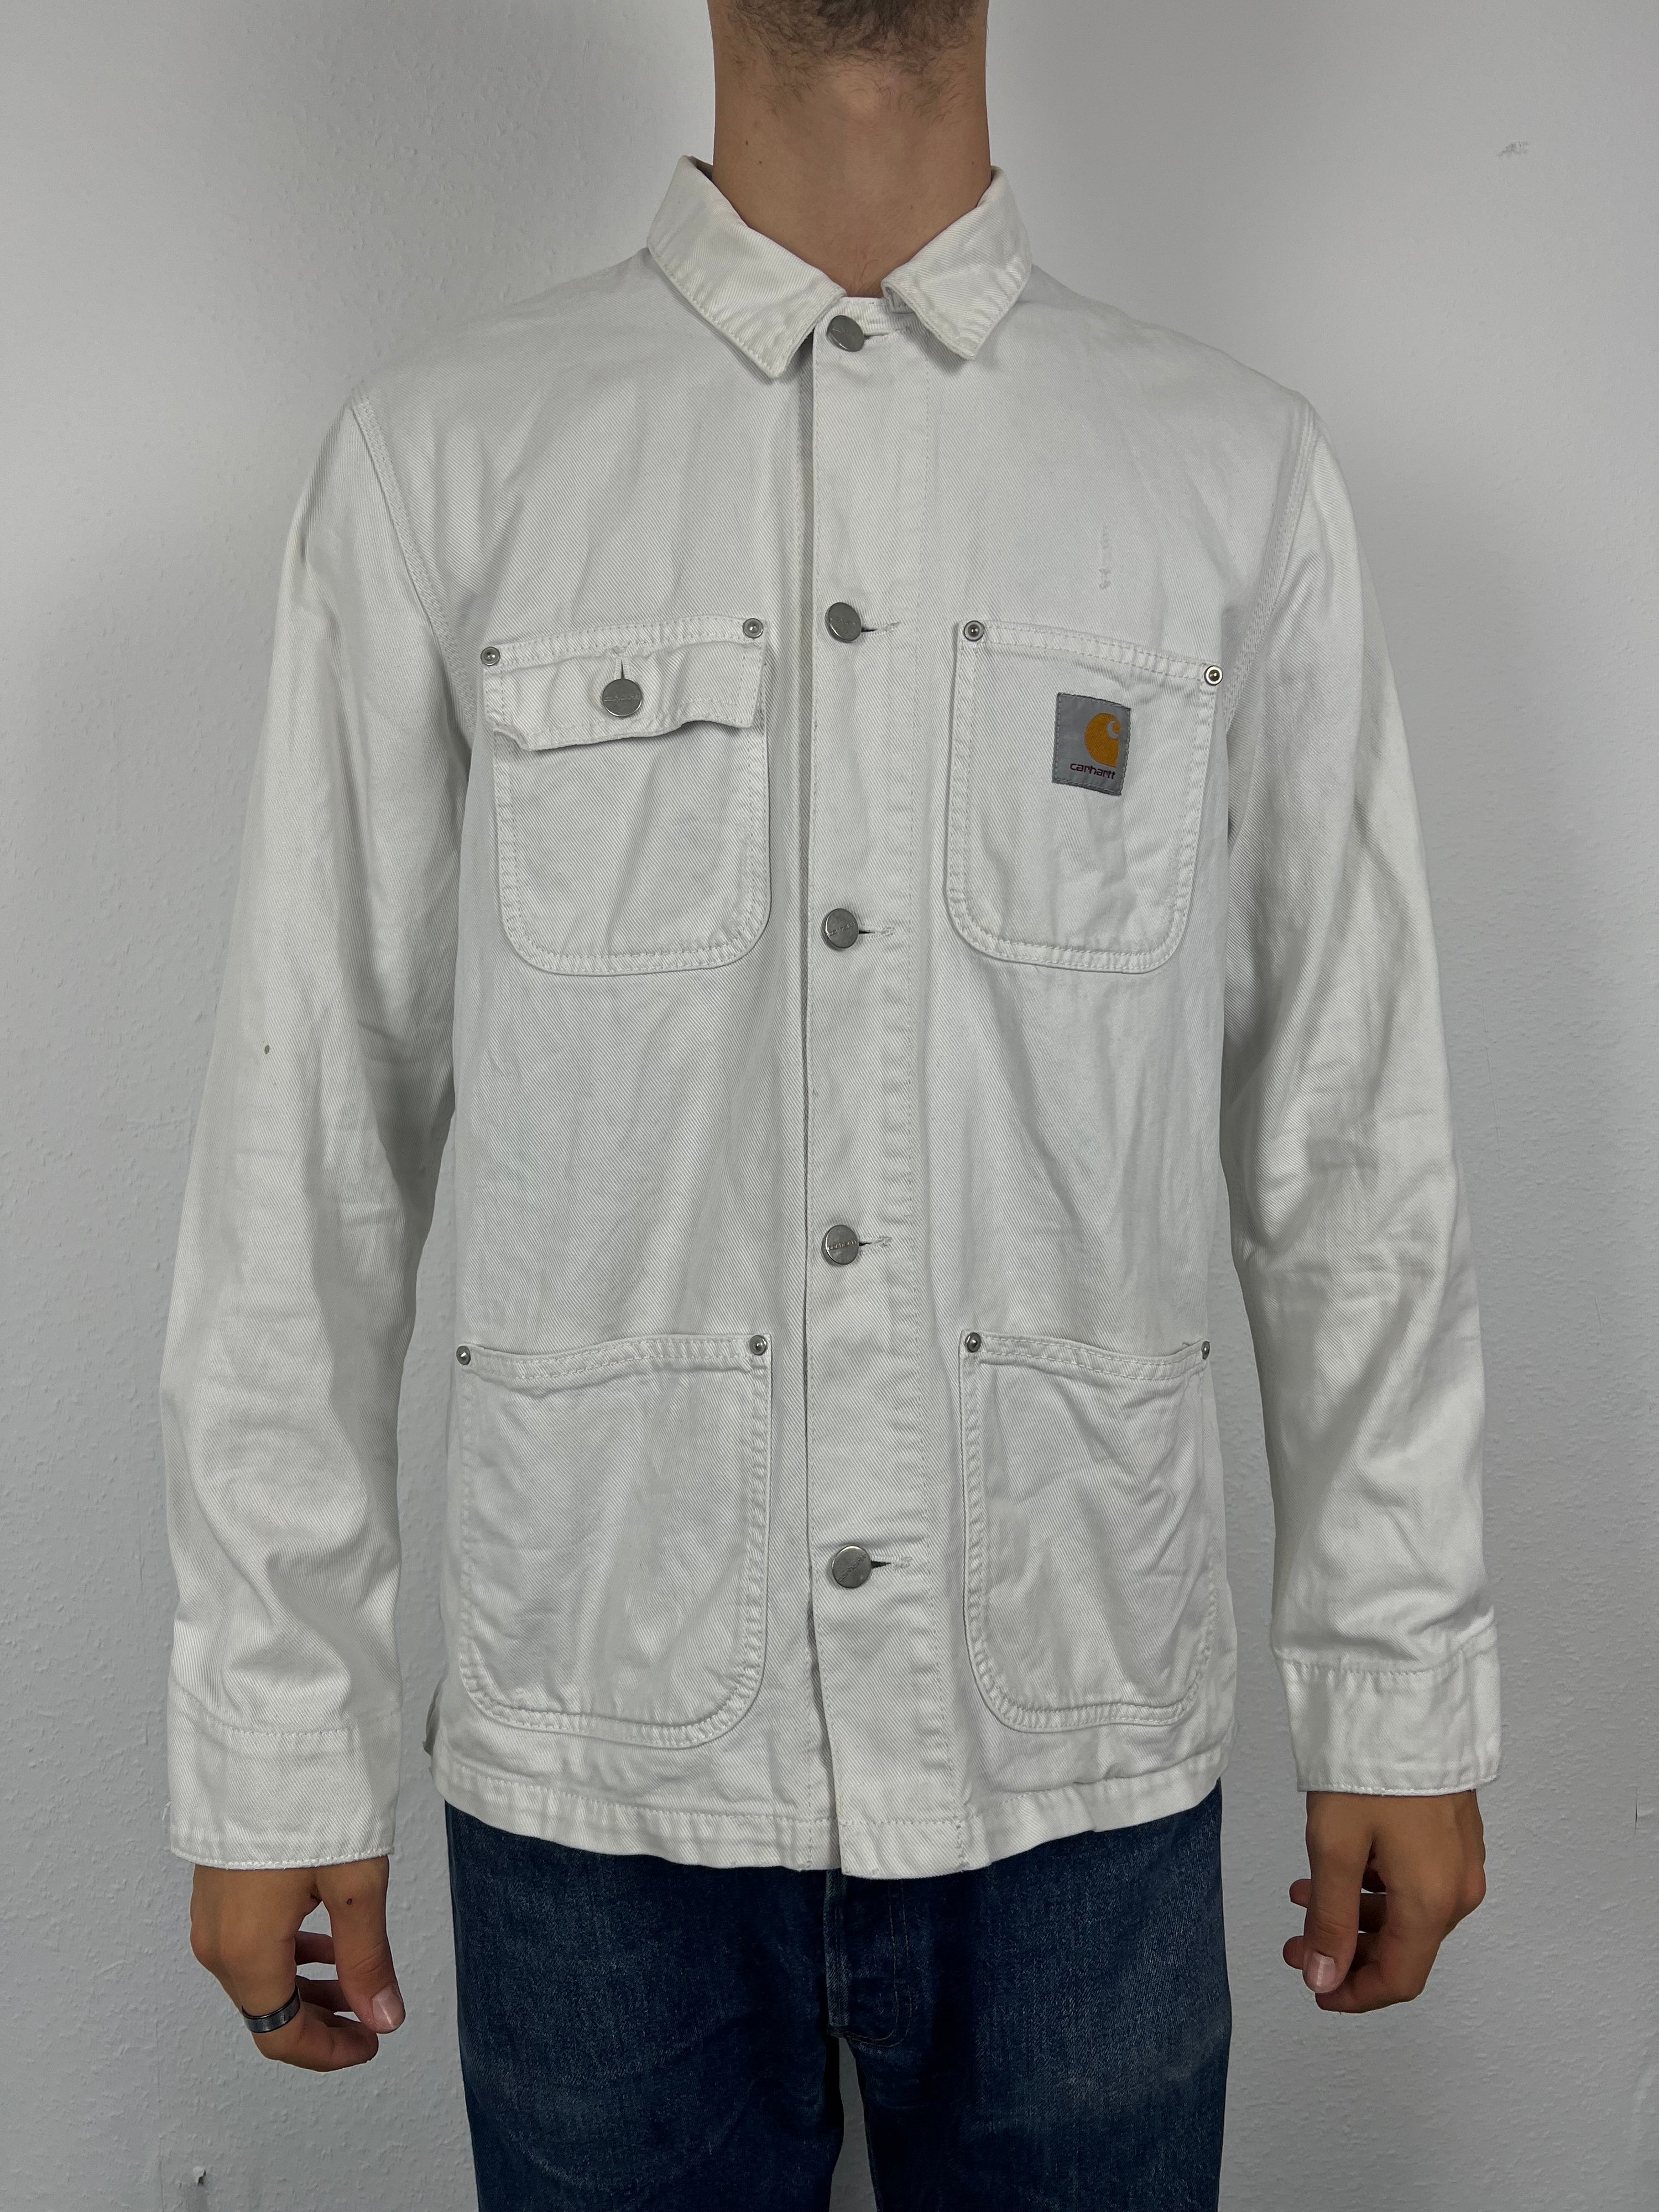 Vintage Carhartt Shirt Jacket (XL)